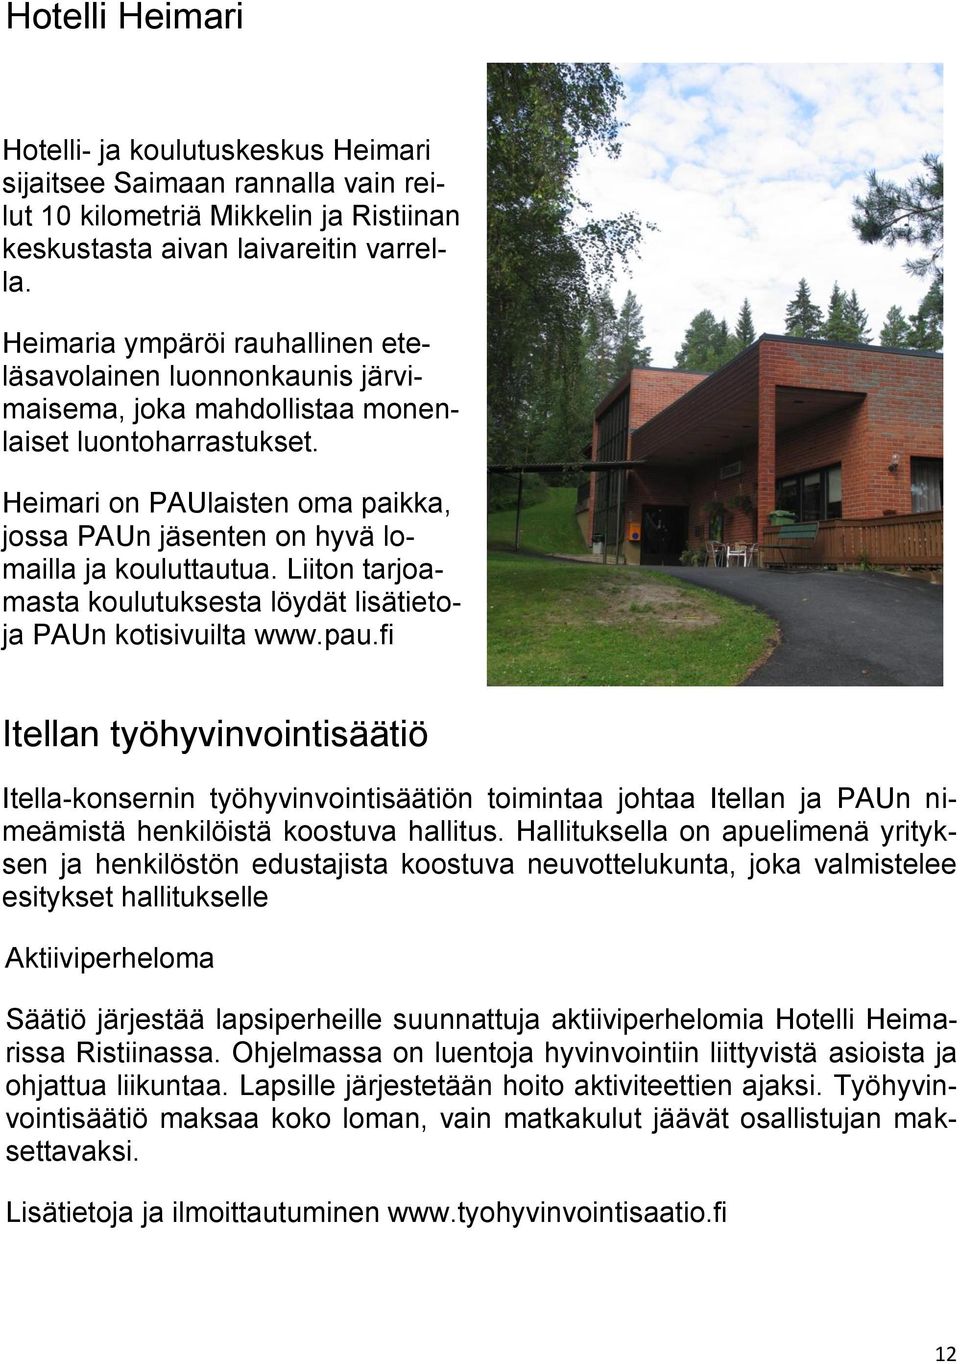 Heimari on PAUlaisten oma paikka, jossa PAUn jäsenten on hyvä lomailla ja kouluttautua. Liiton tarjoamasta koulutuksesta löydät lisätietoja PAUn kotisivuilta www.pau.